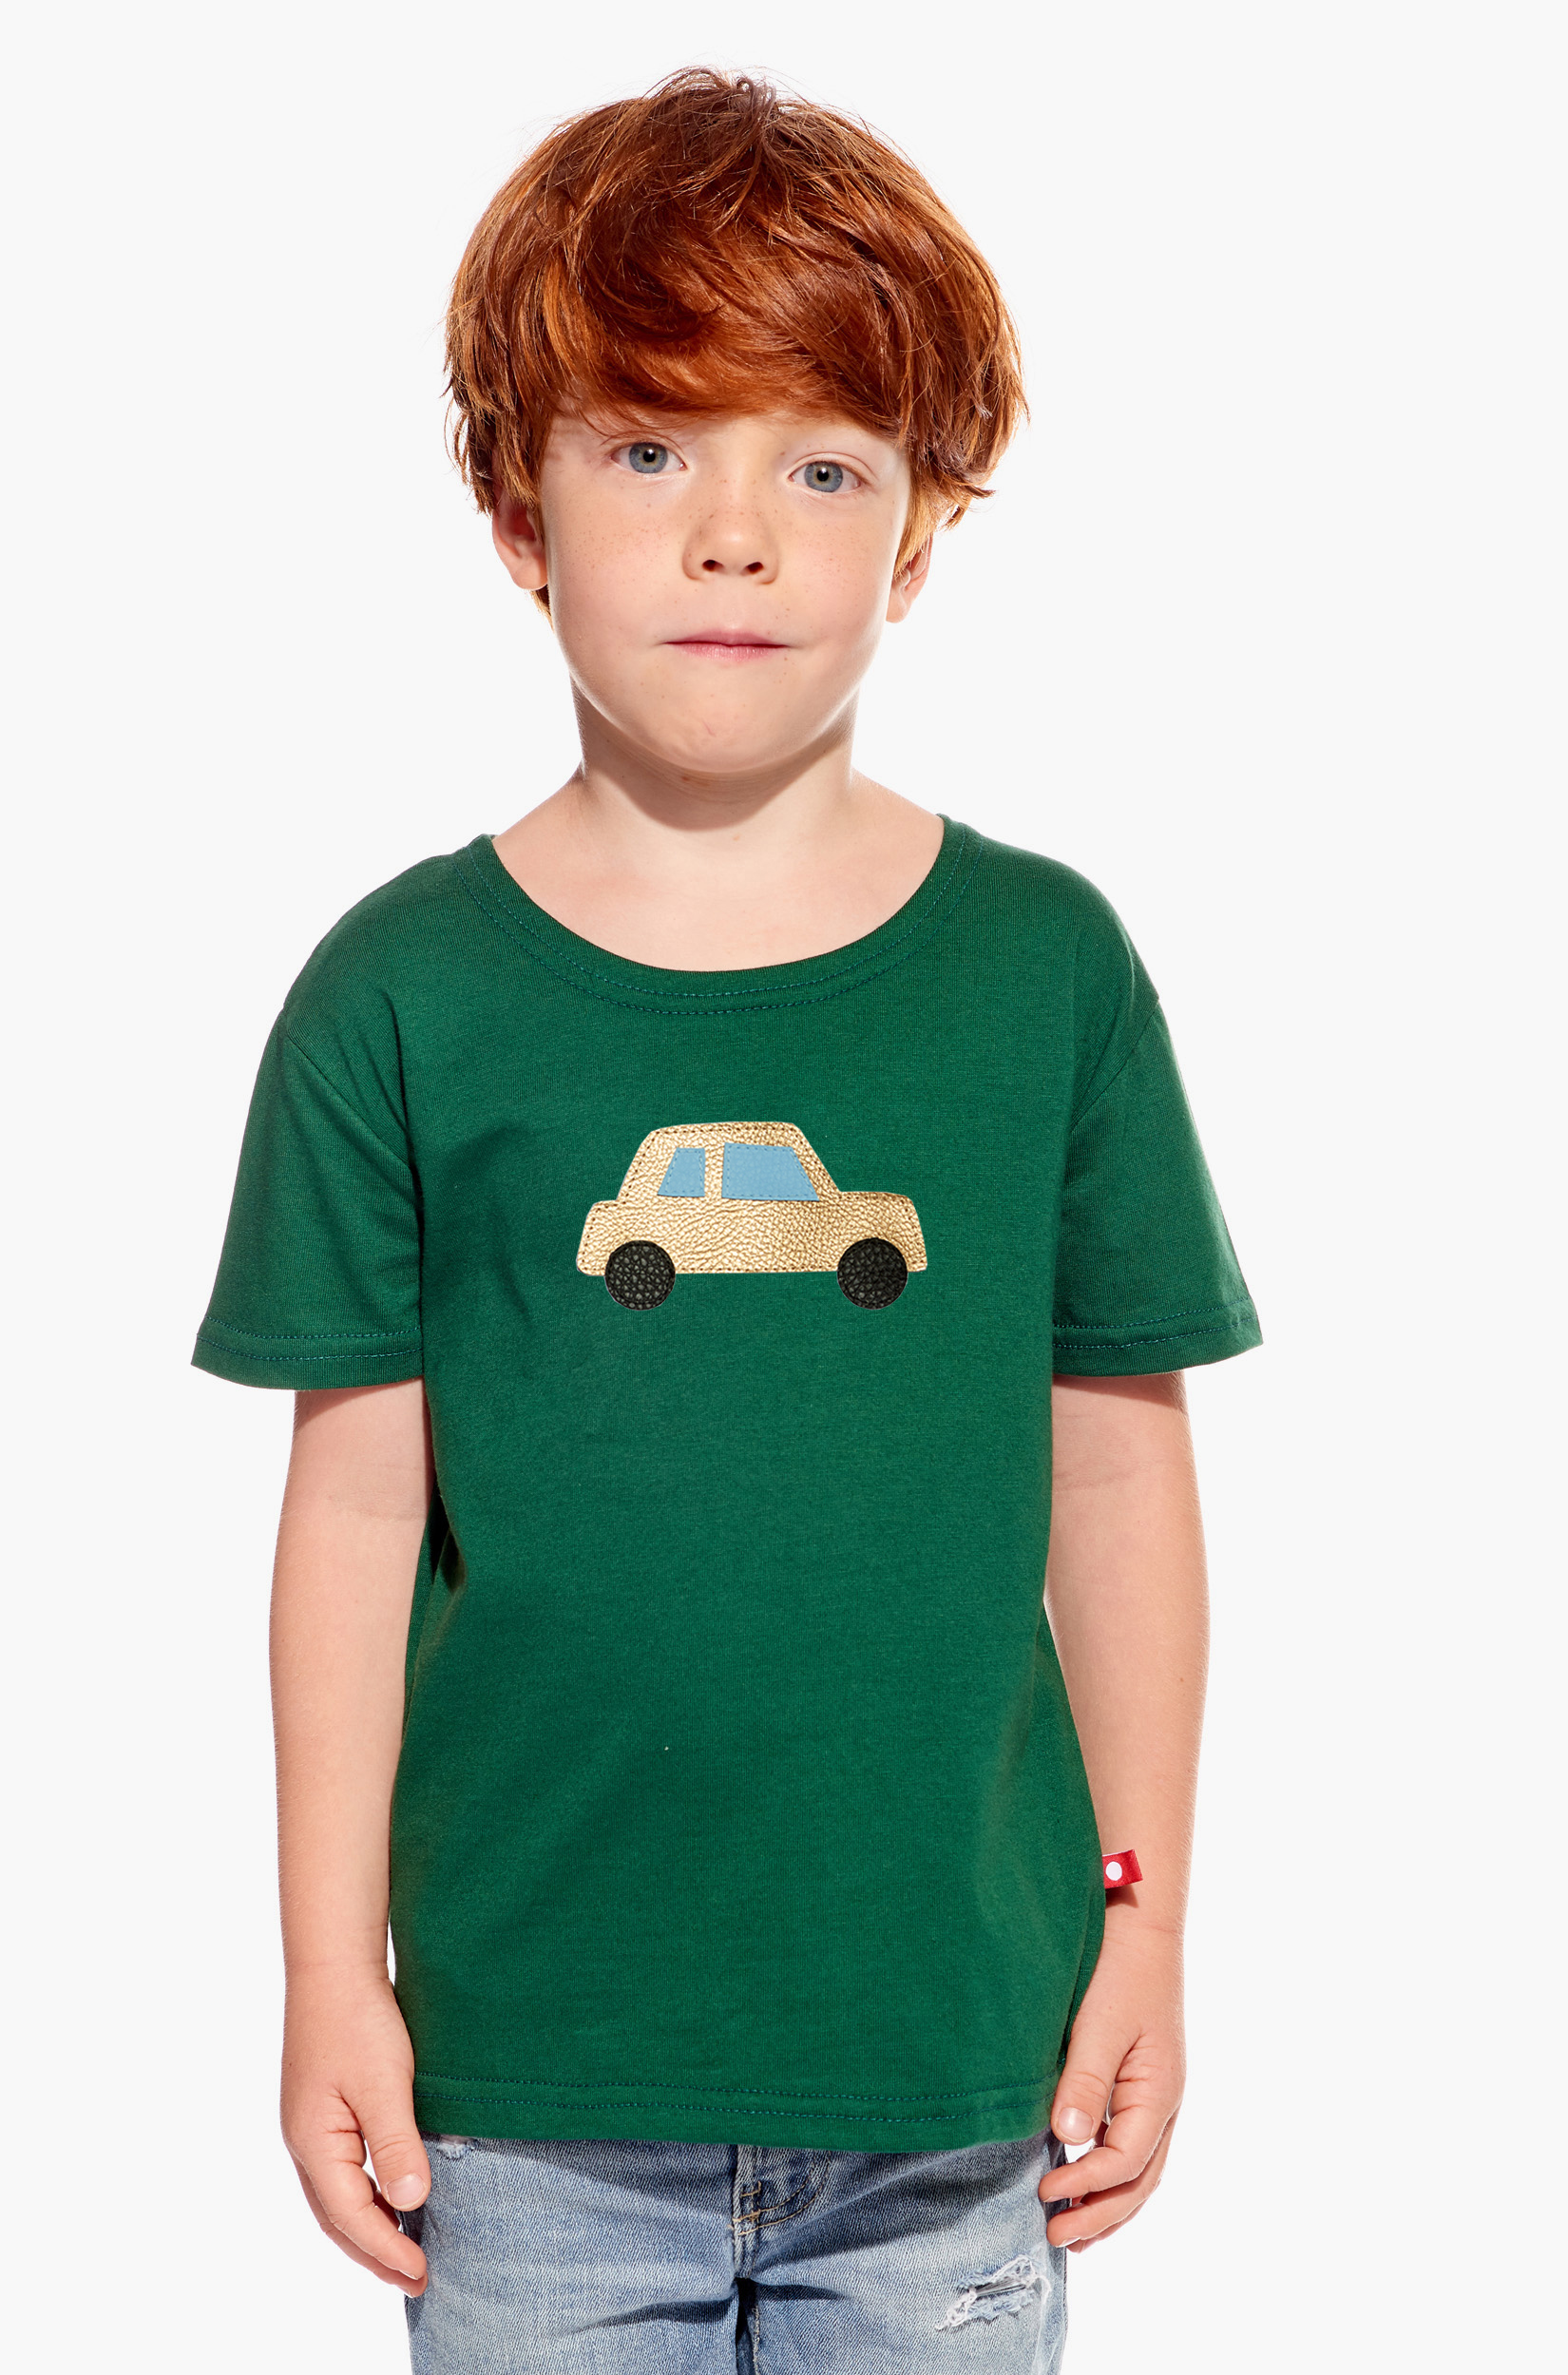 Shirt with car